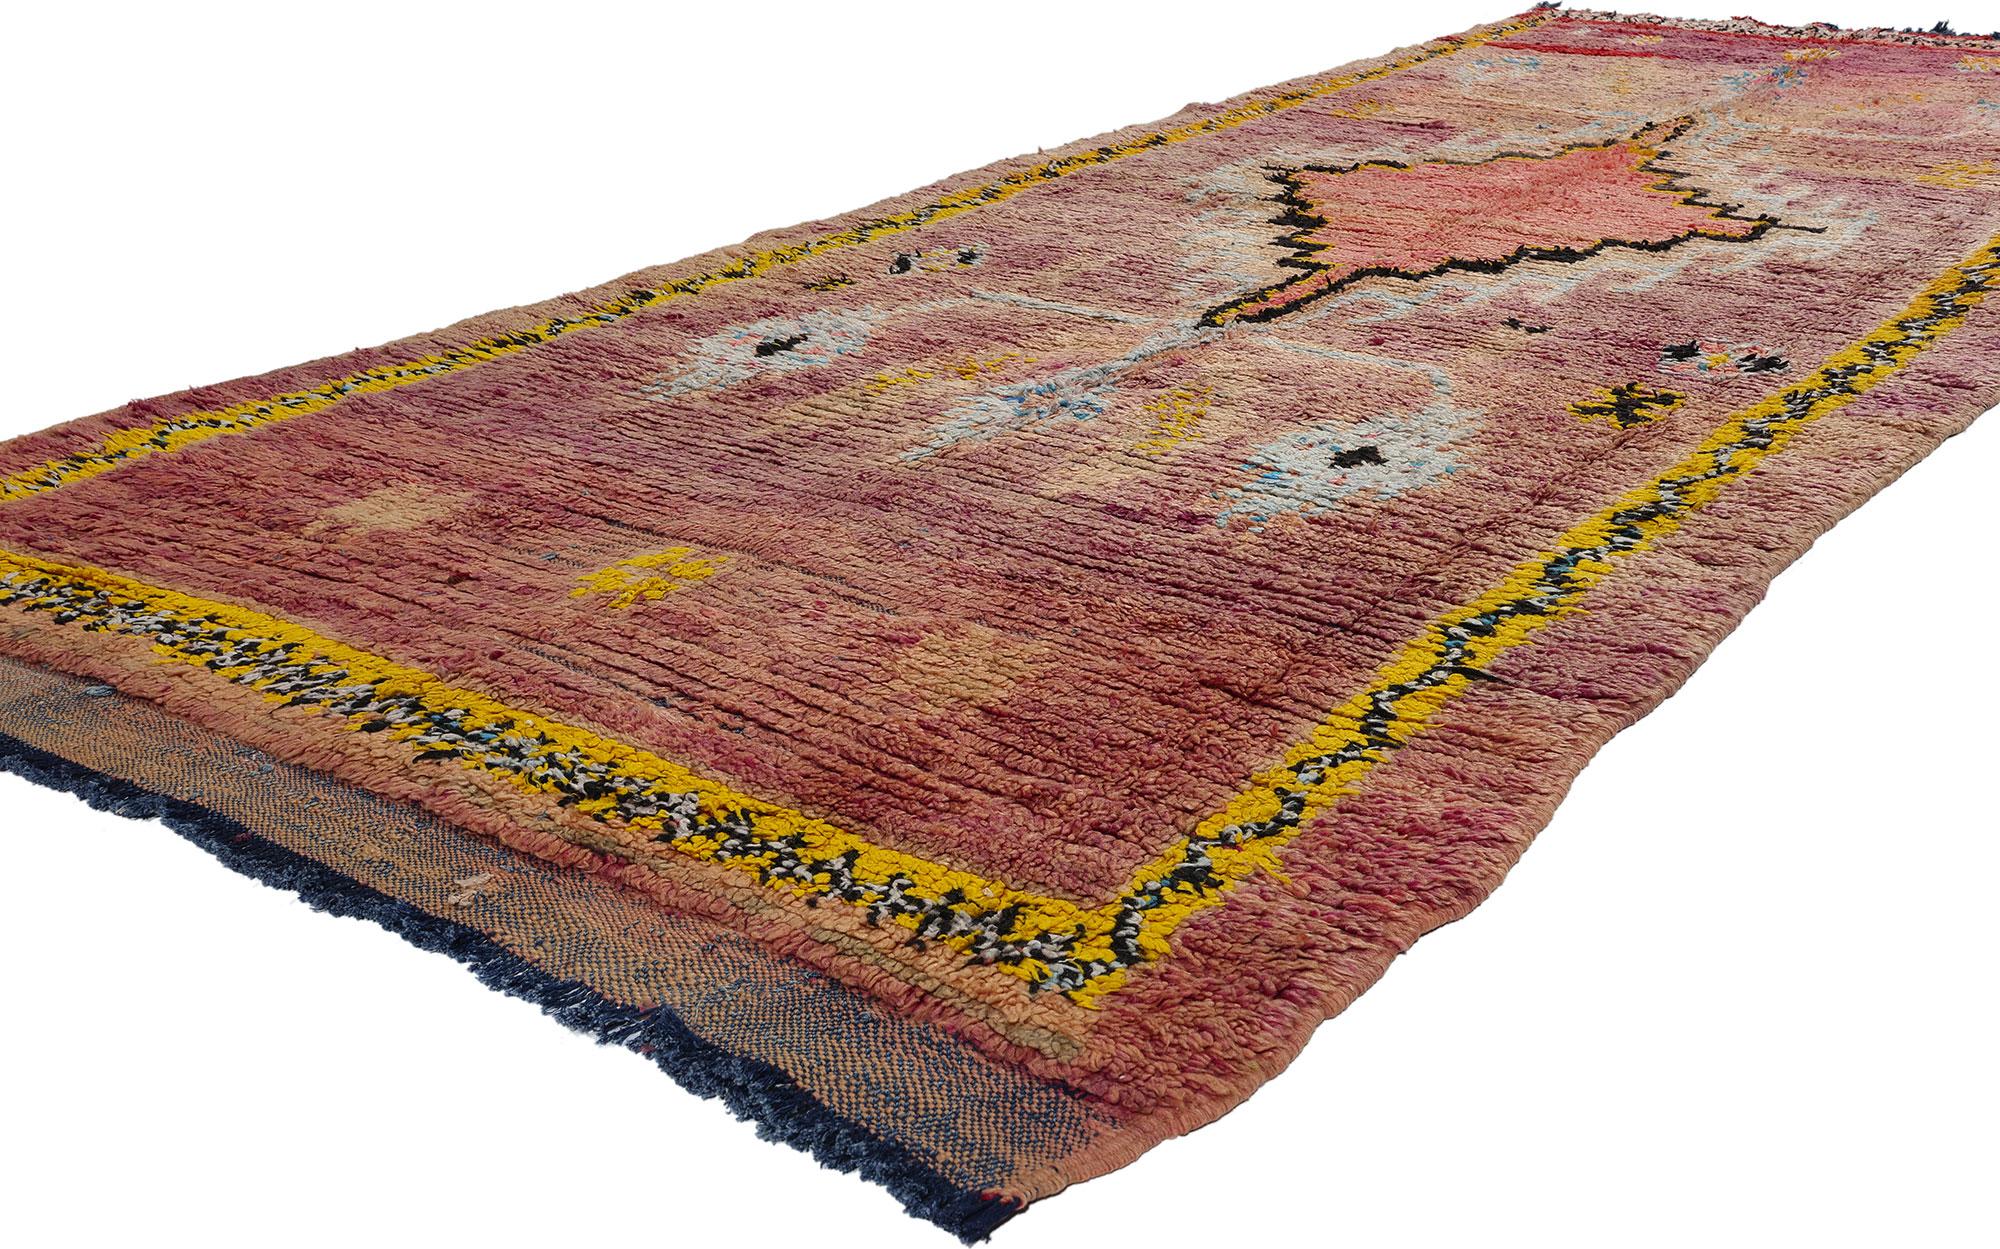 21819 Vintage Lila Boujad Marokkanischer Teppich, 04'04 x 11'07. Lassen Sie sich von der lebendigen Essenz der Boujad-Teppiche begeistern, die in der lebhaften Stadt Boujad in der Region Khouribga entstanden sind. Diese marokkanischen Teppiche